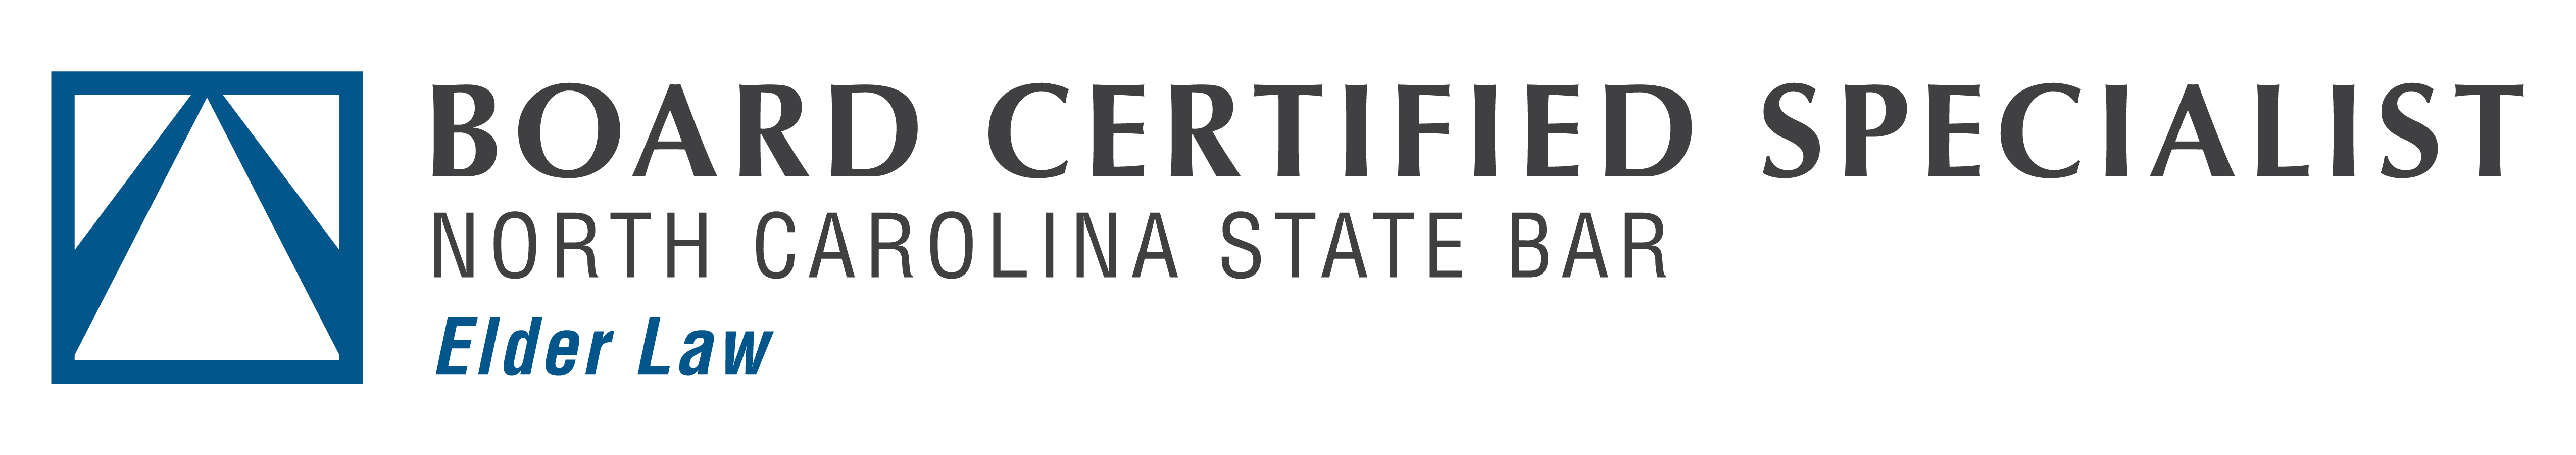 NC State Bar Board Certified Specialist in Elder Law